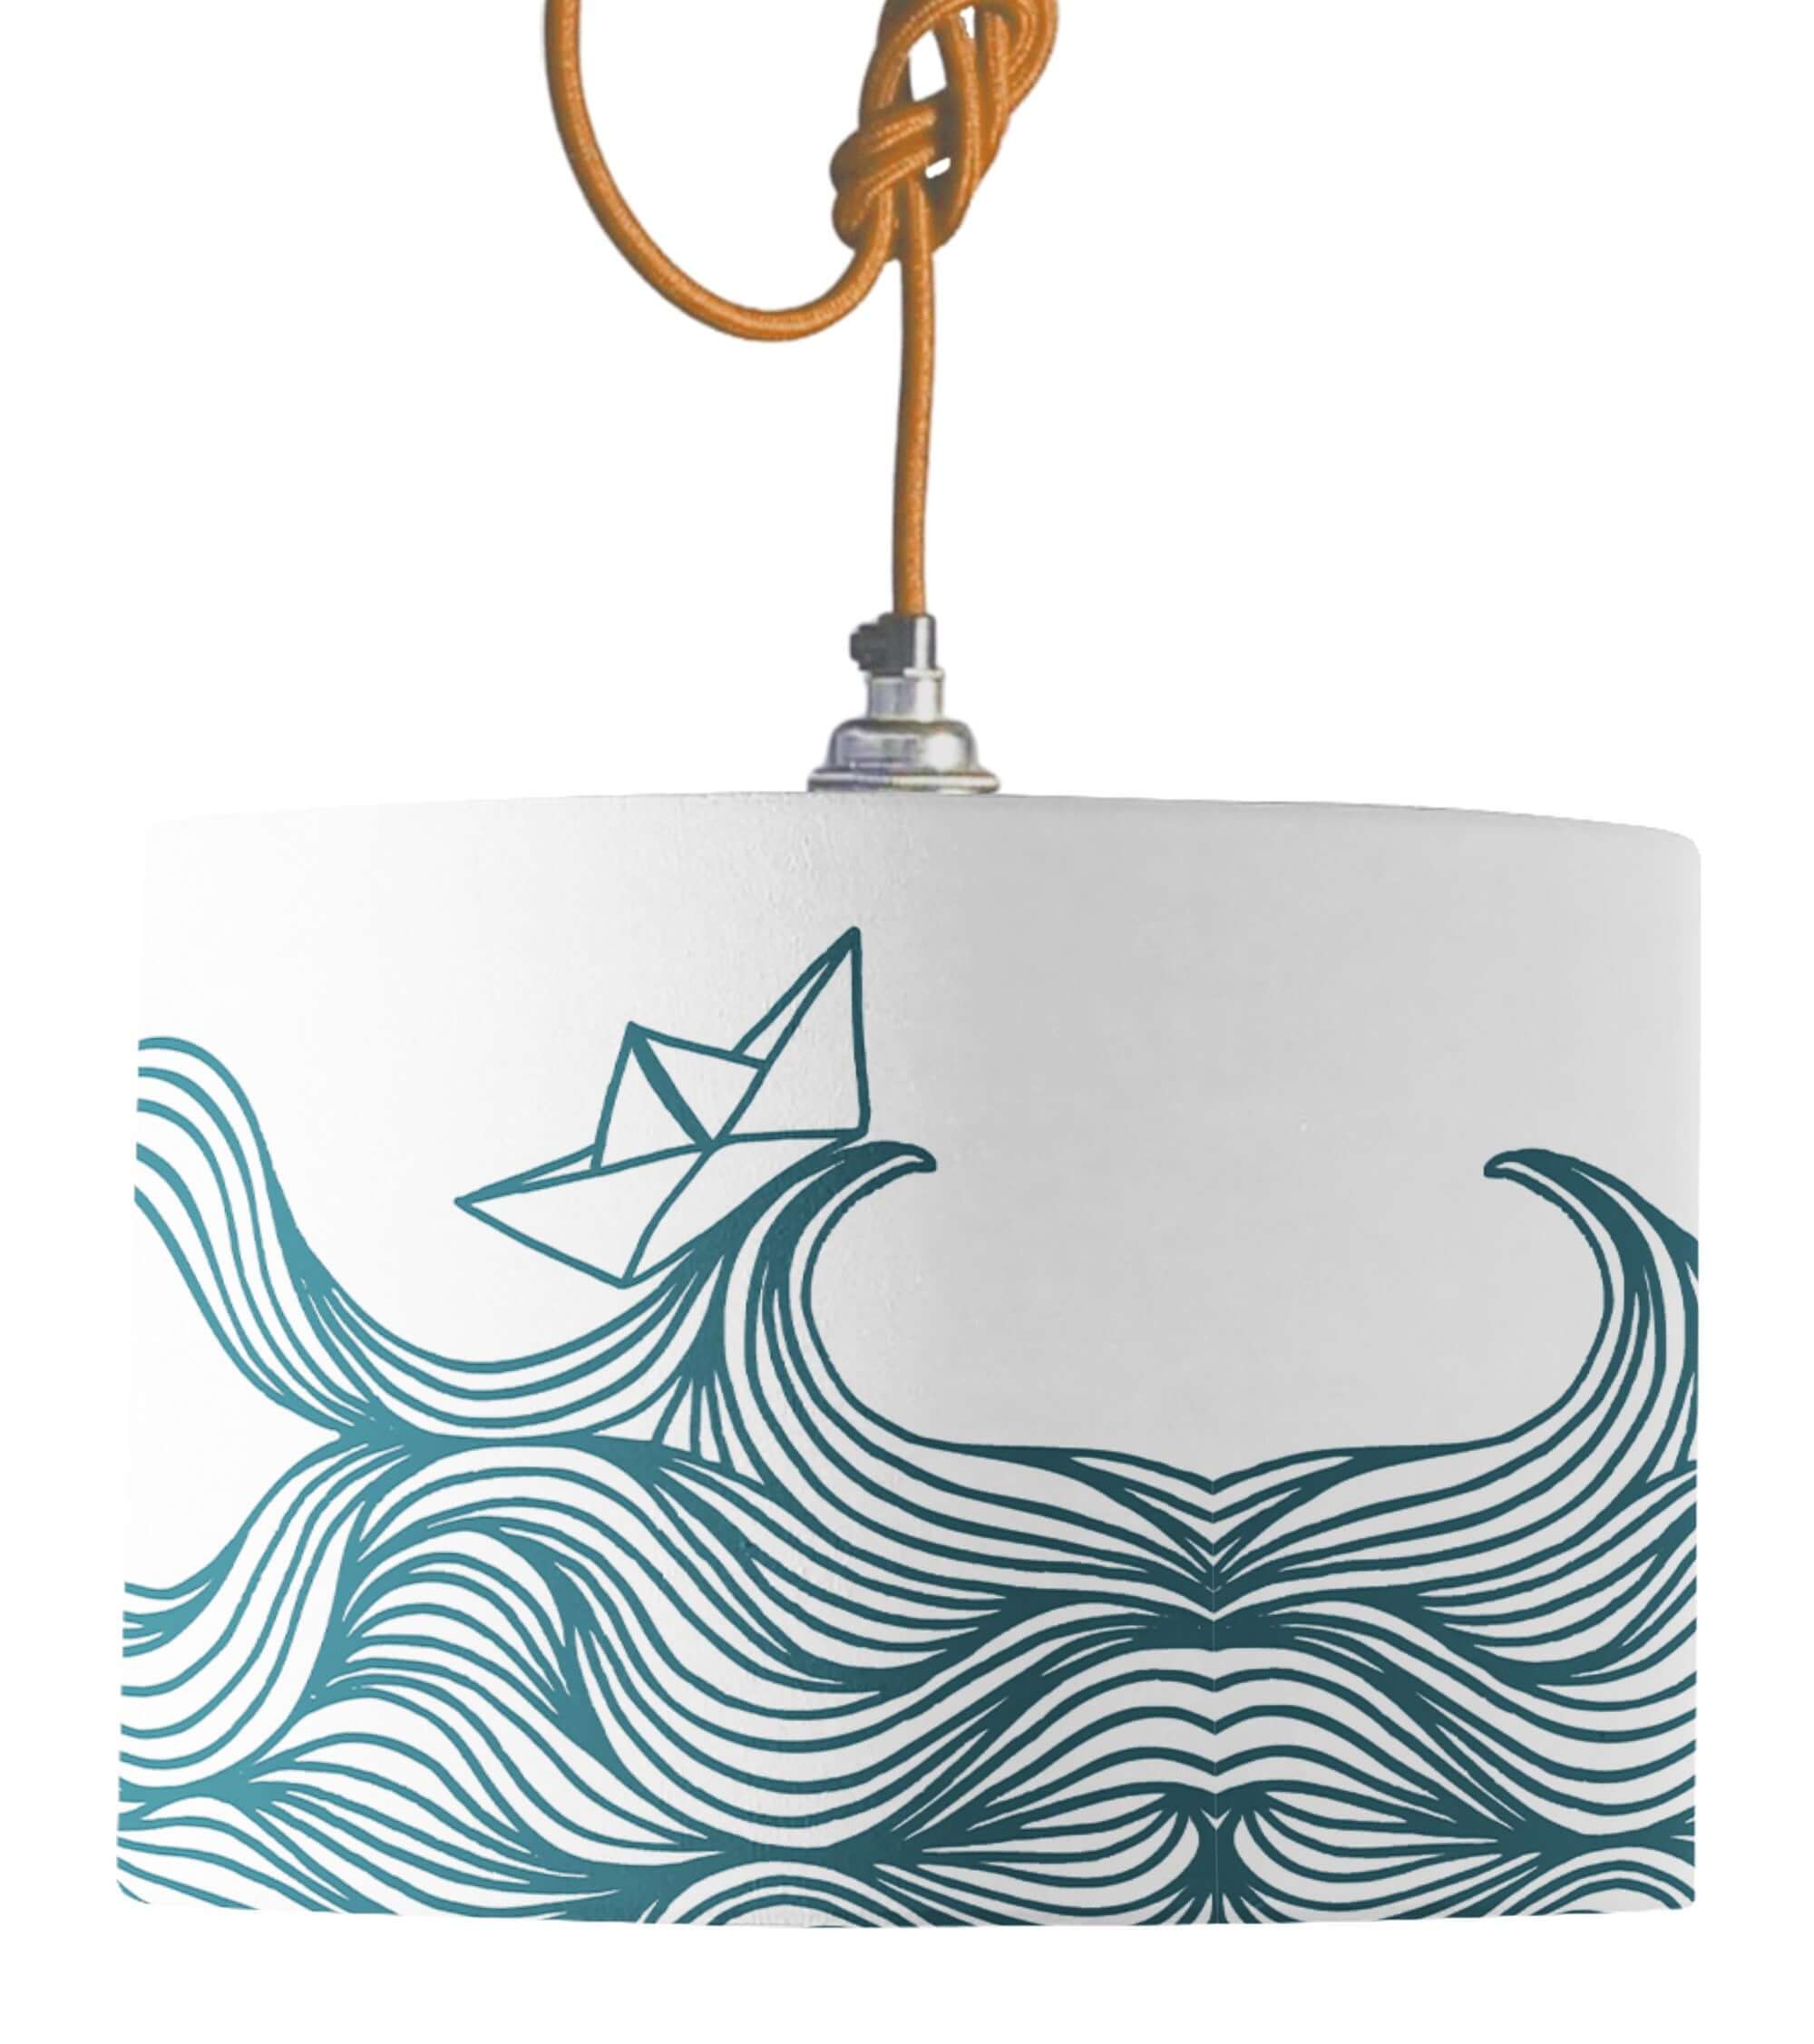 Paper Boat Lamp Shade lampshade Mustard and Gray Ltd Shropshire UK